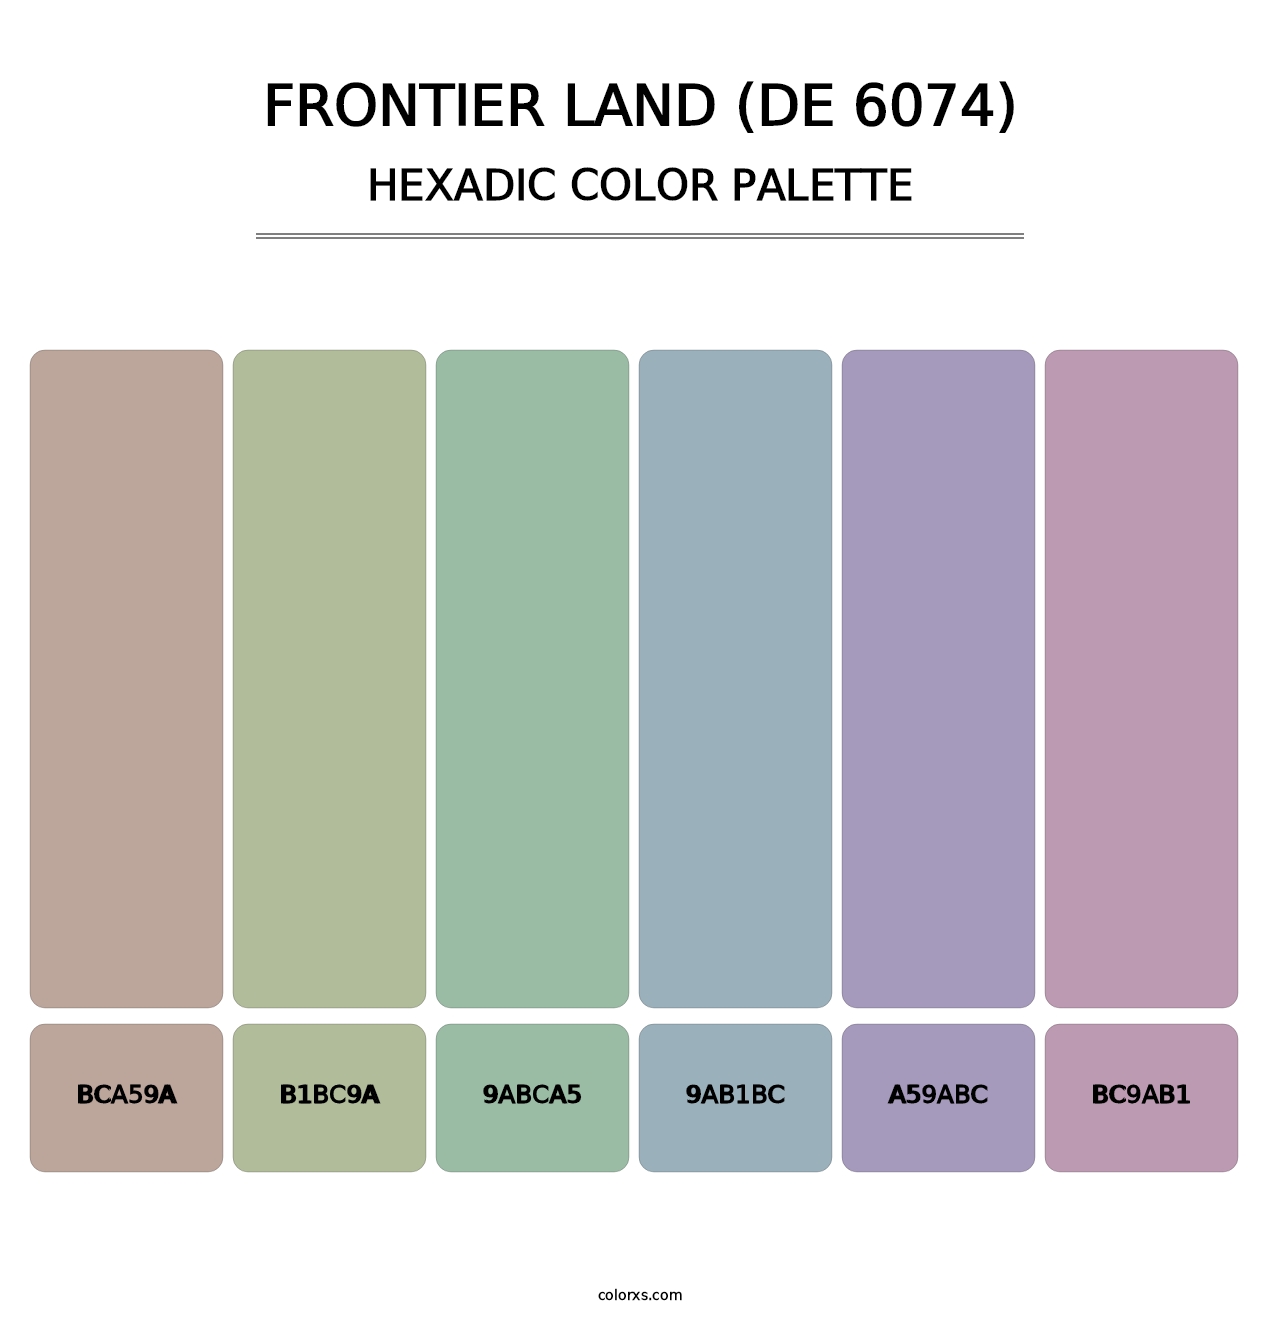 Frontier Land (DE 6074) - Hexadic Color Palette